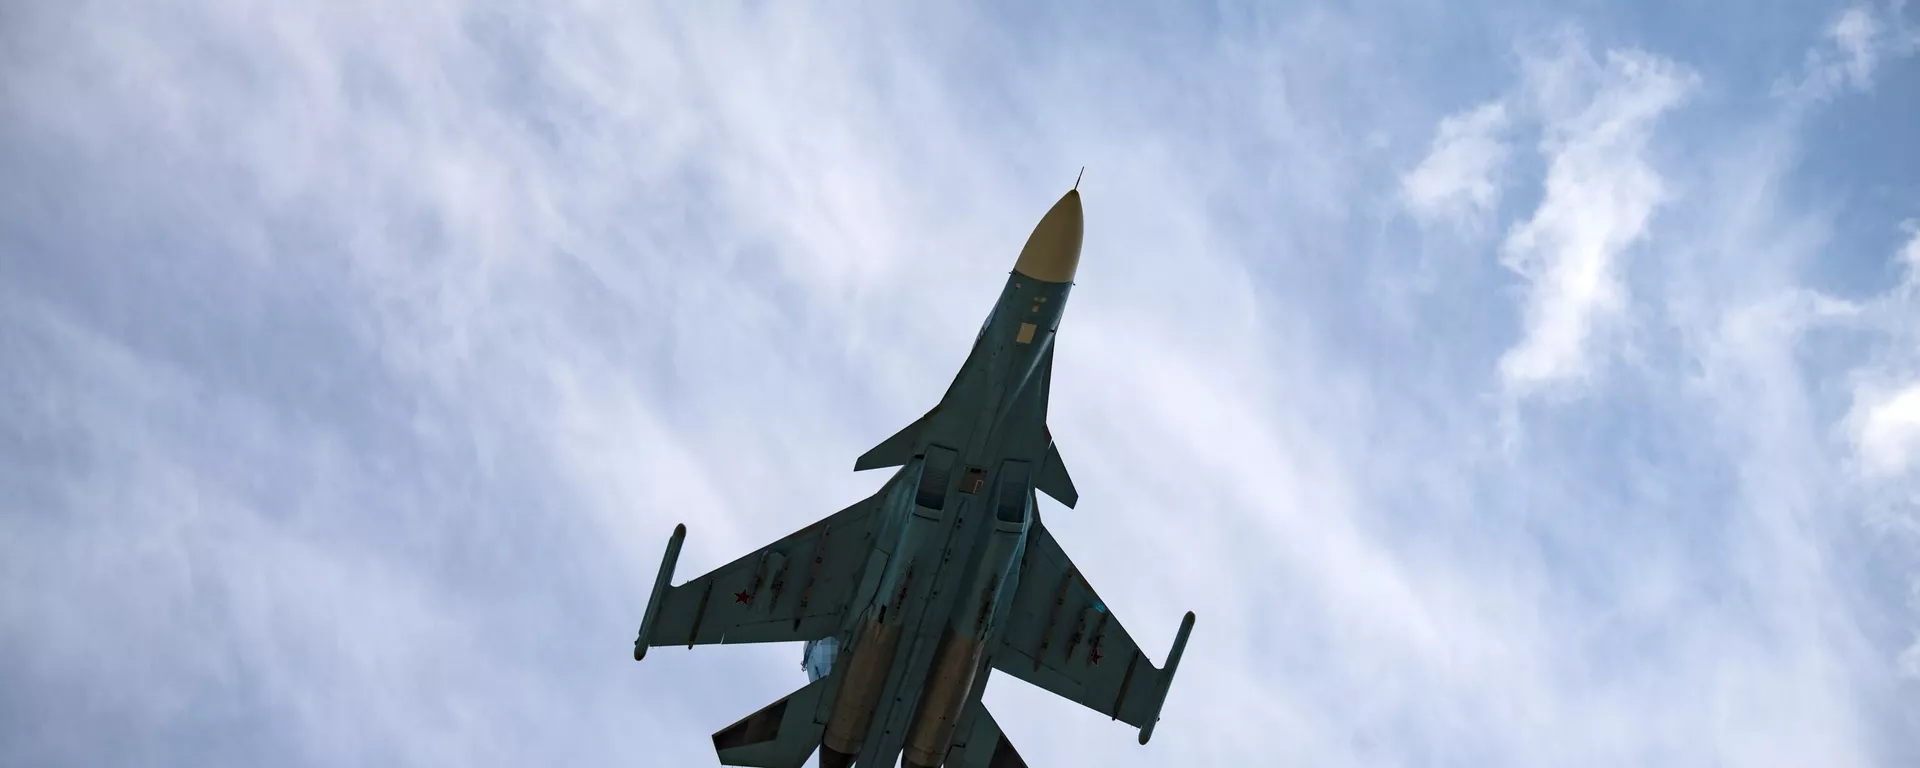 Российский истребитель Су-34 летит во время военной операции России на Украине, в неизвестном месте. - Sputnik International, 1920, 15.09.2023